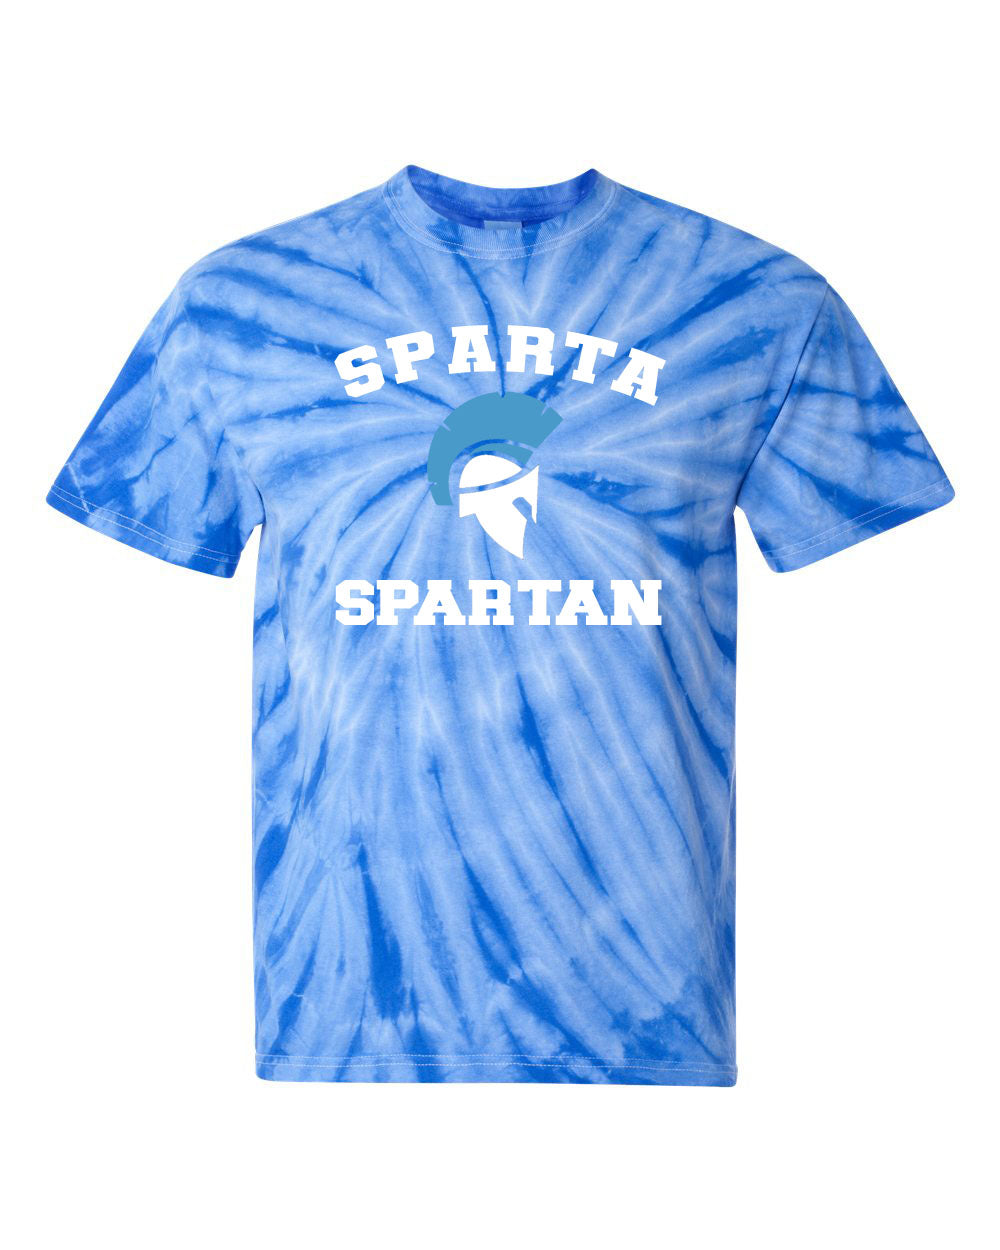 Sparta School Tie Dye t-shirt Design 1